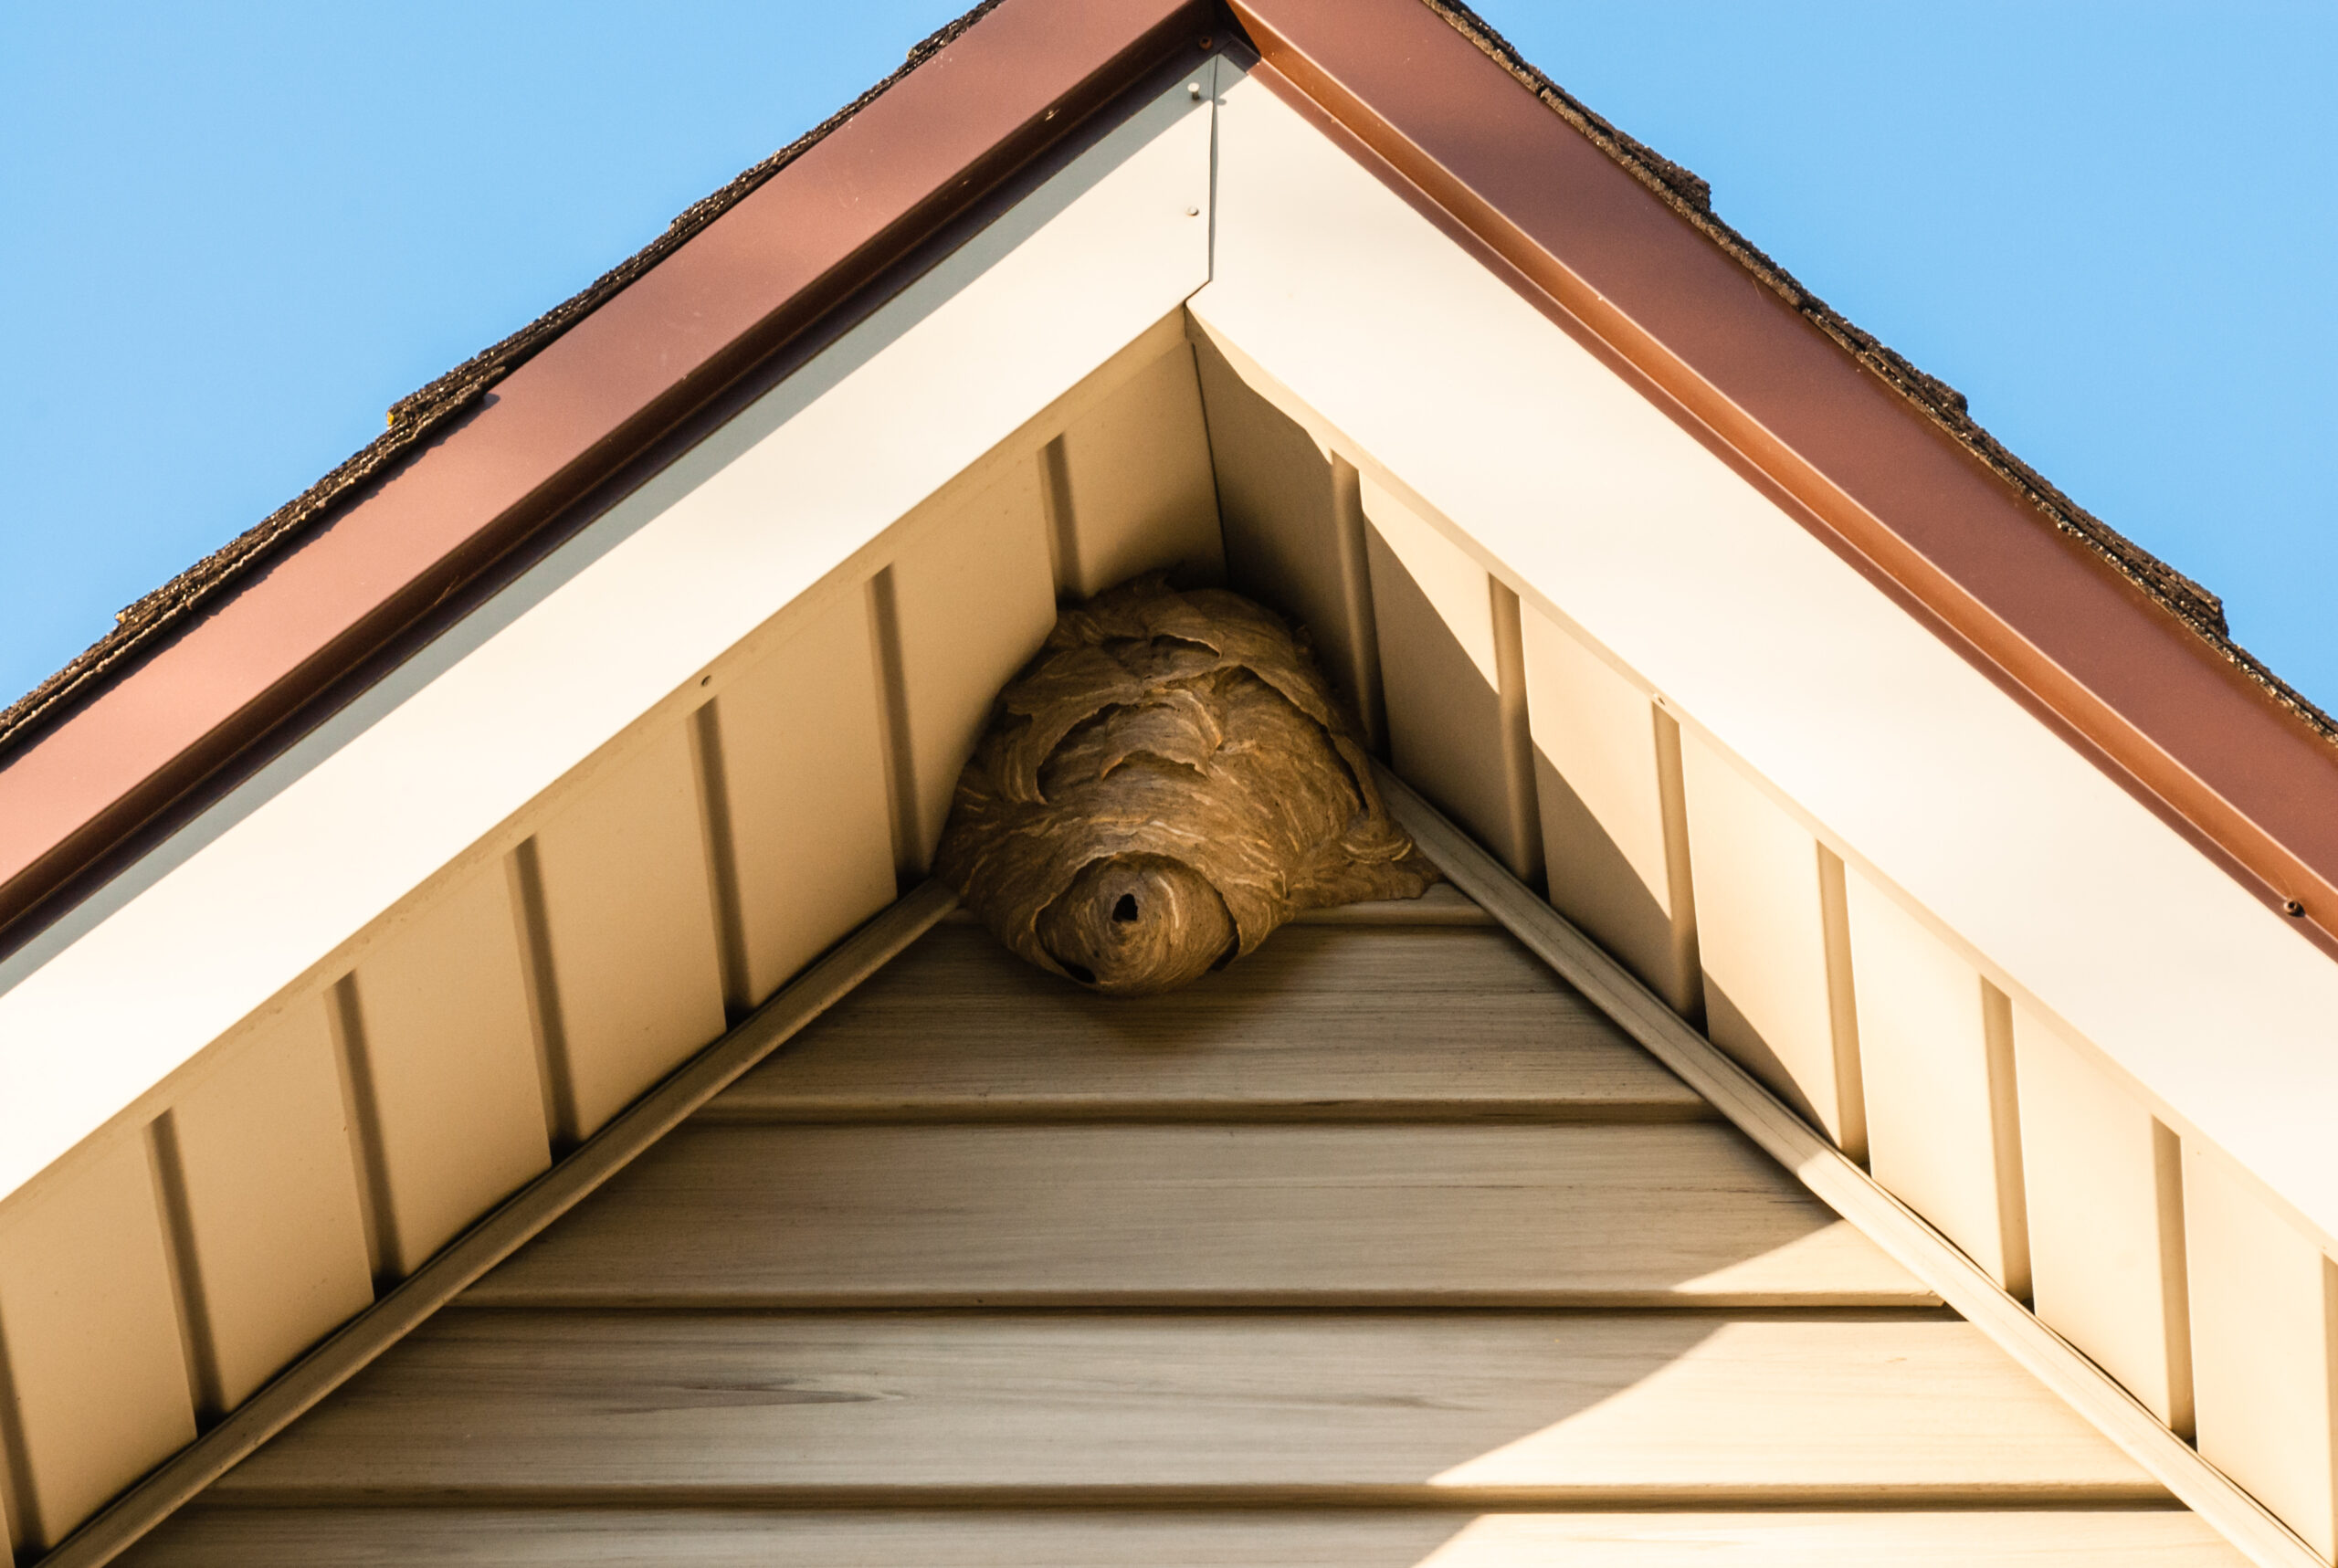 wasp-nest-scaled.jpg